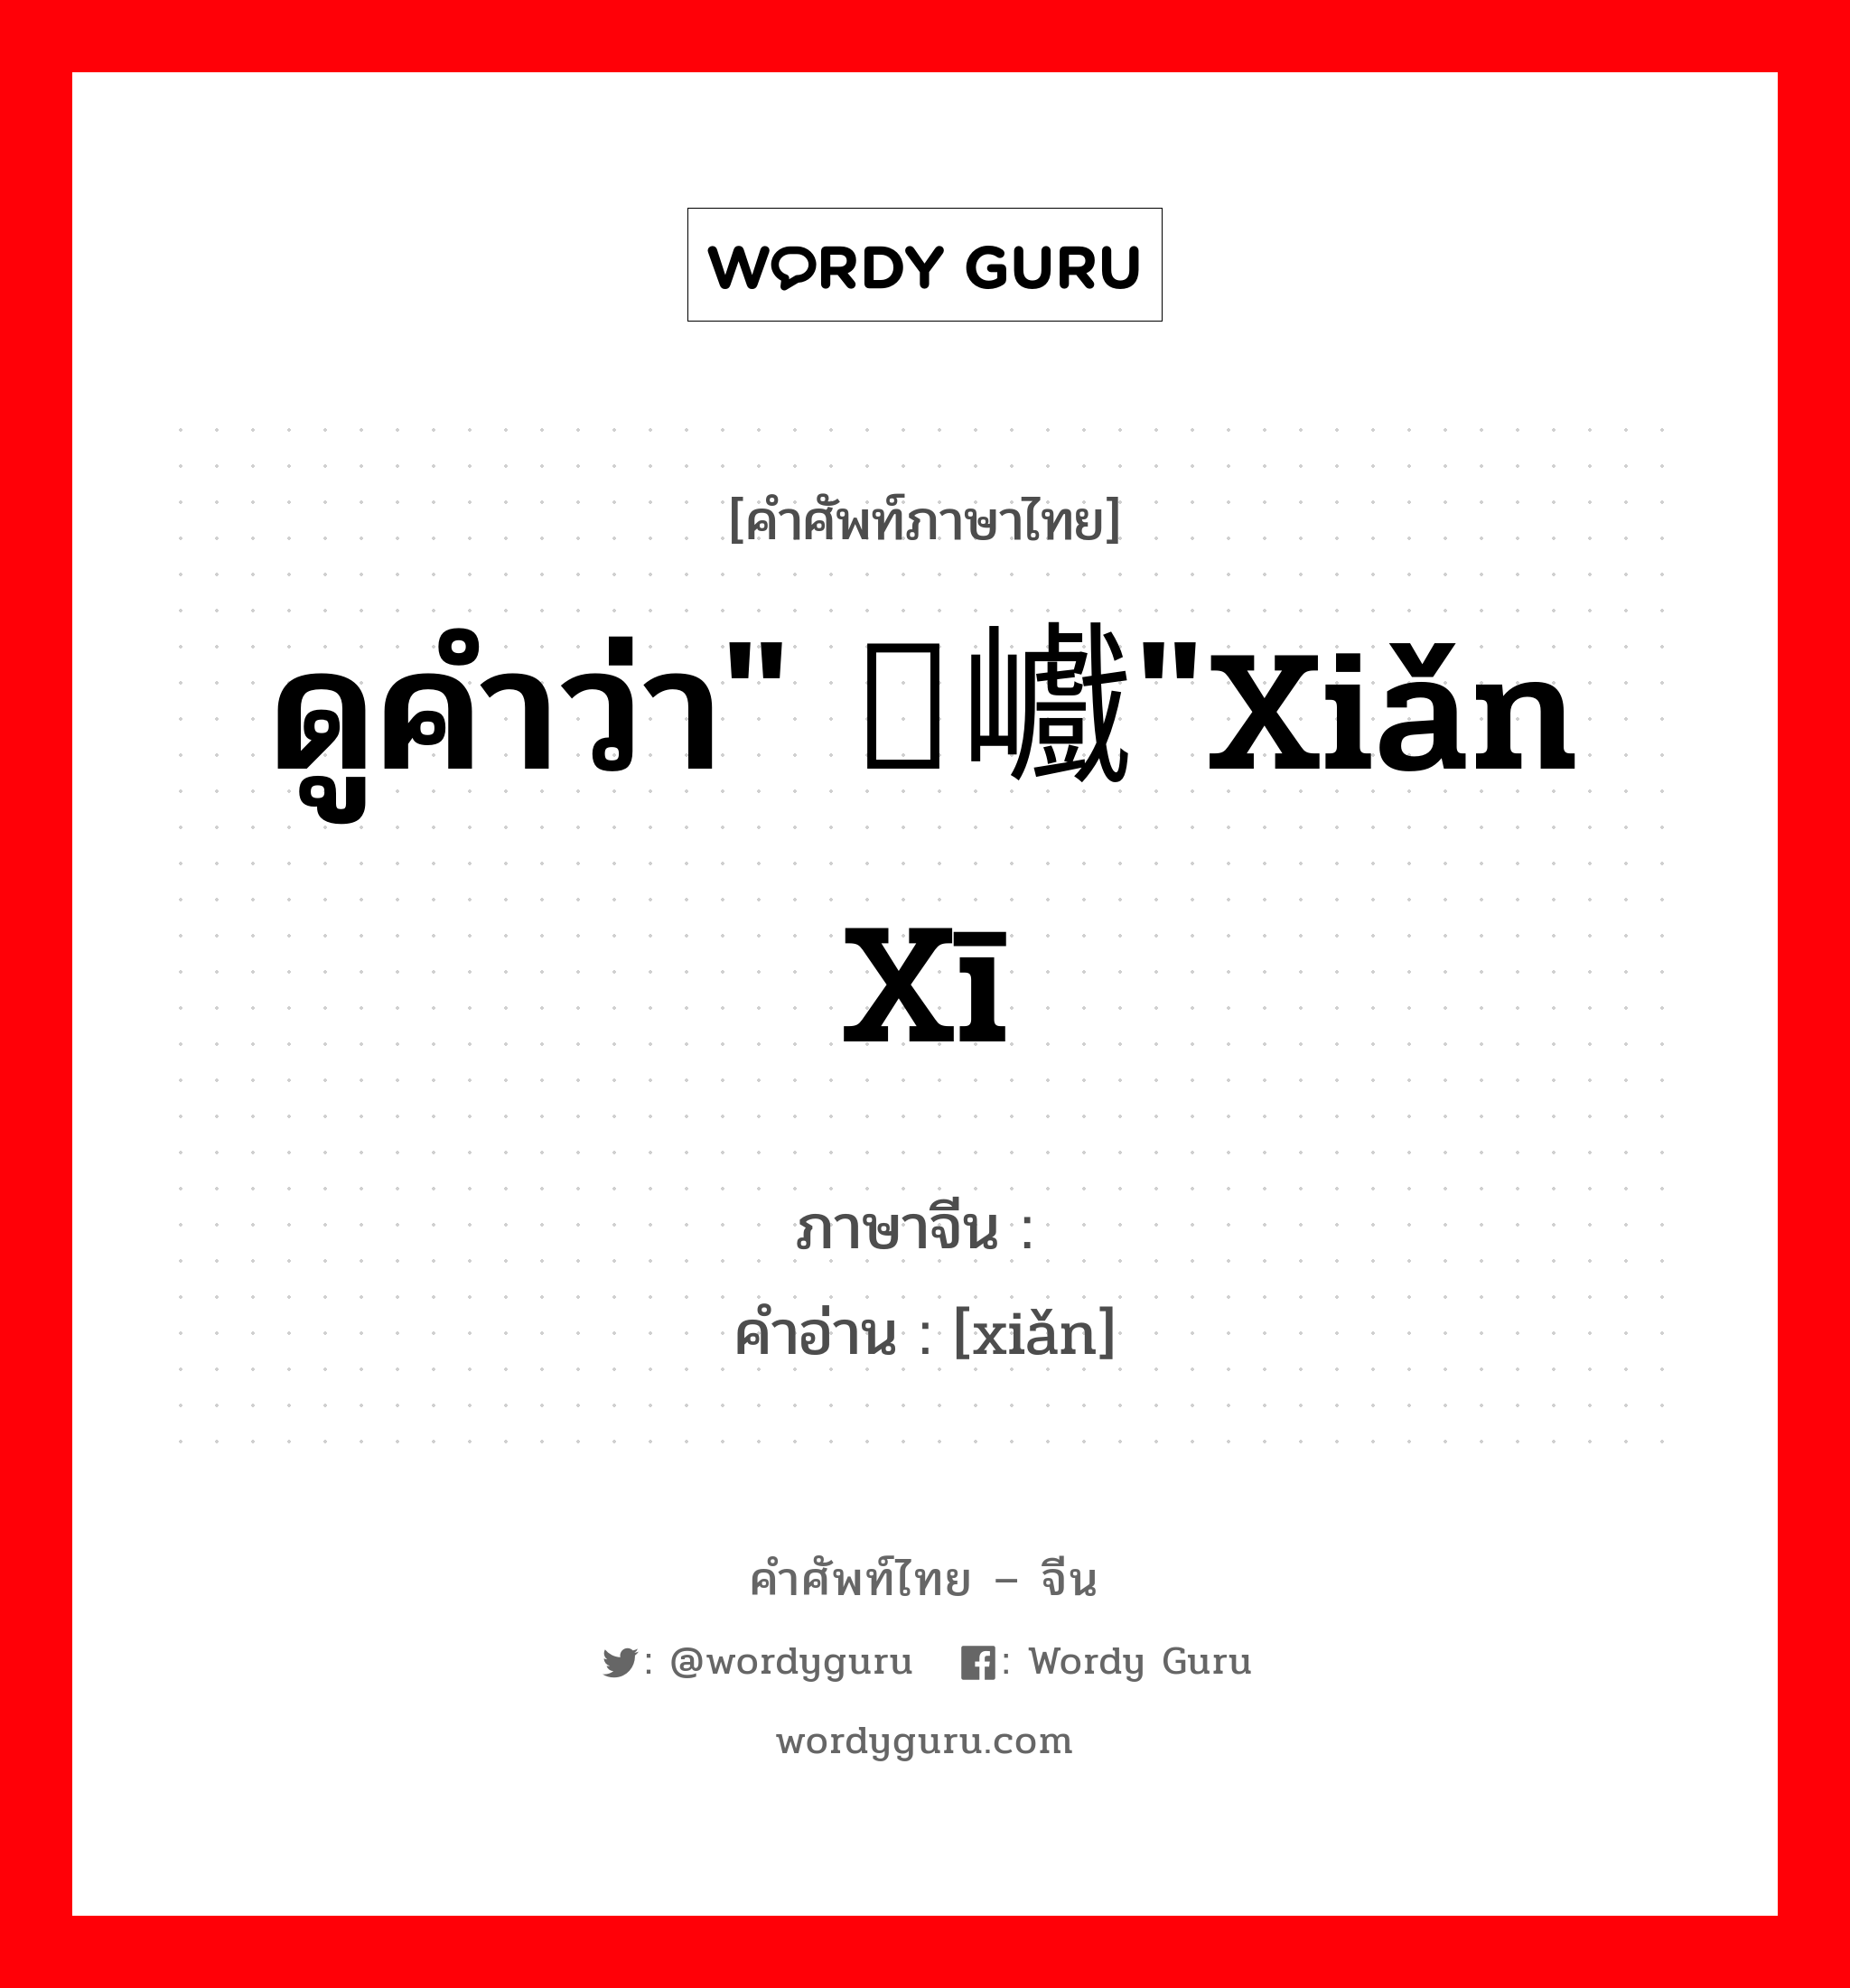 ดูคำว่า" 崄巇"xiǎn xī ภาษาจีนคืออะไร, คำศัพท์ภาษาไทย - จีน ดูคำว่า" 崄巇"xiǎn xī ภาษาจีน 崄 คำอ่าน [xiǎn]